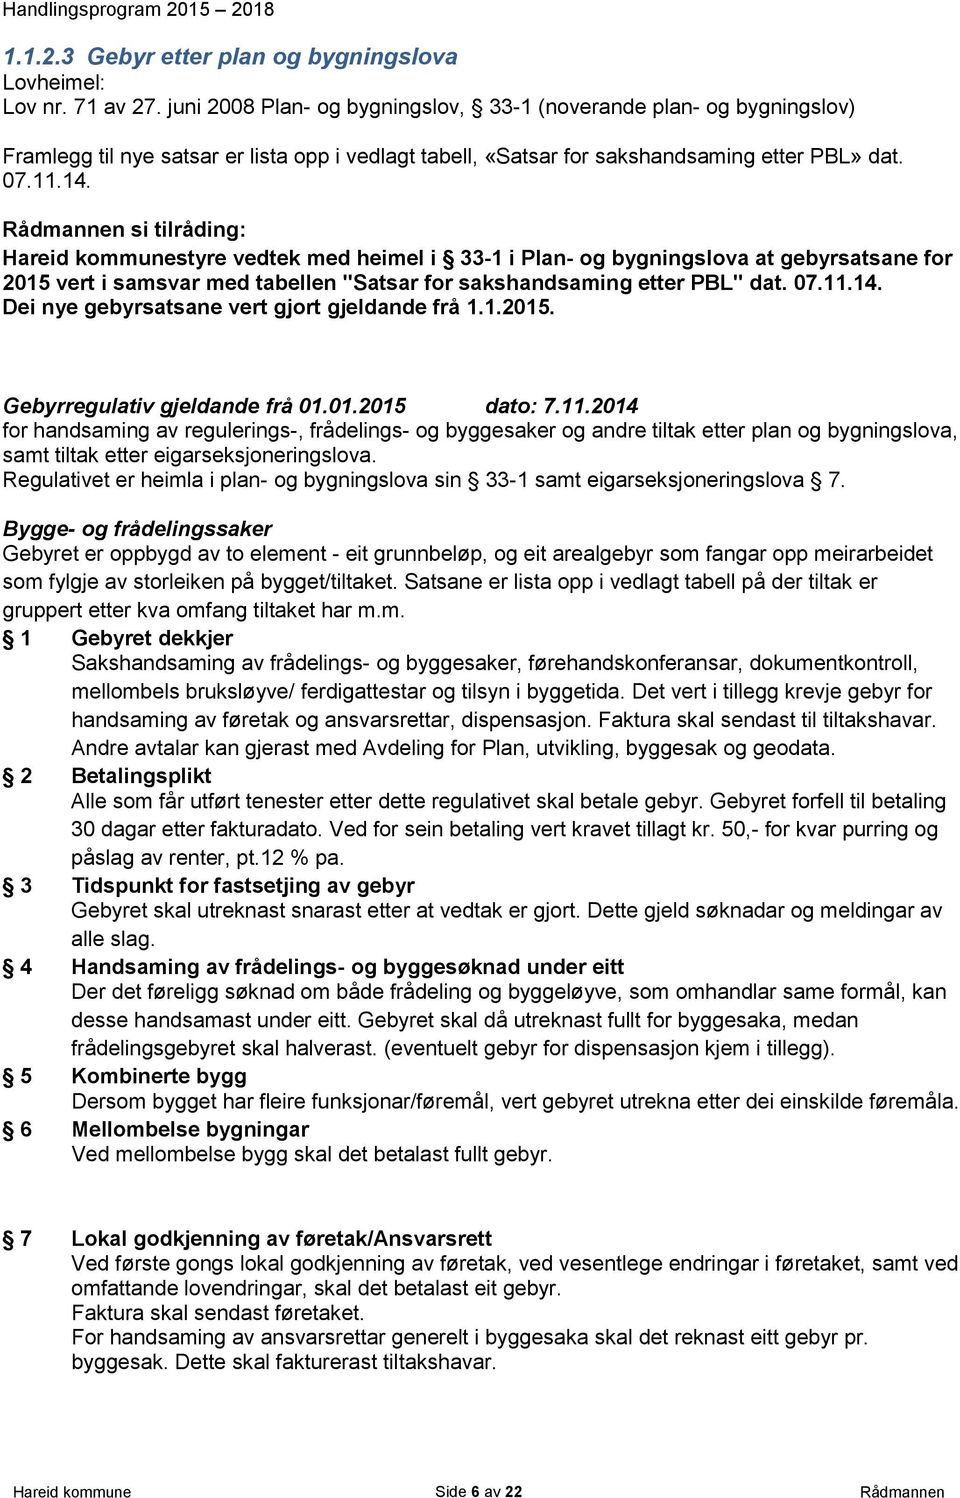 Rådmannen si tilråding: Hareid kommunestyre vedtek med heimel i 33-1 i Plan- og bygningslova at gebyrsatsane for 2015 vert i samsvar med tabellen "Satsar for sakshandsaming etter PBL" dat. 07.11.14.